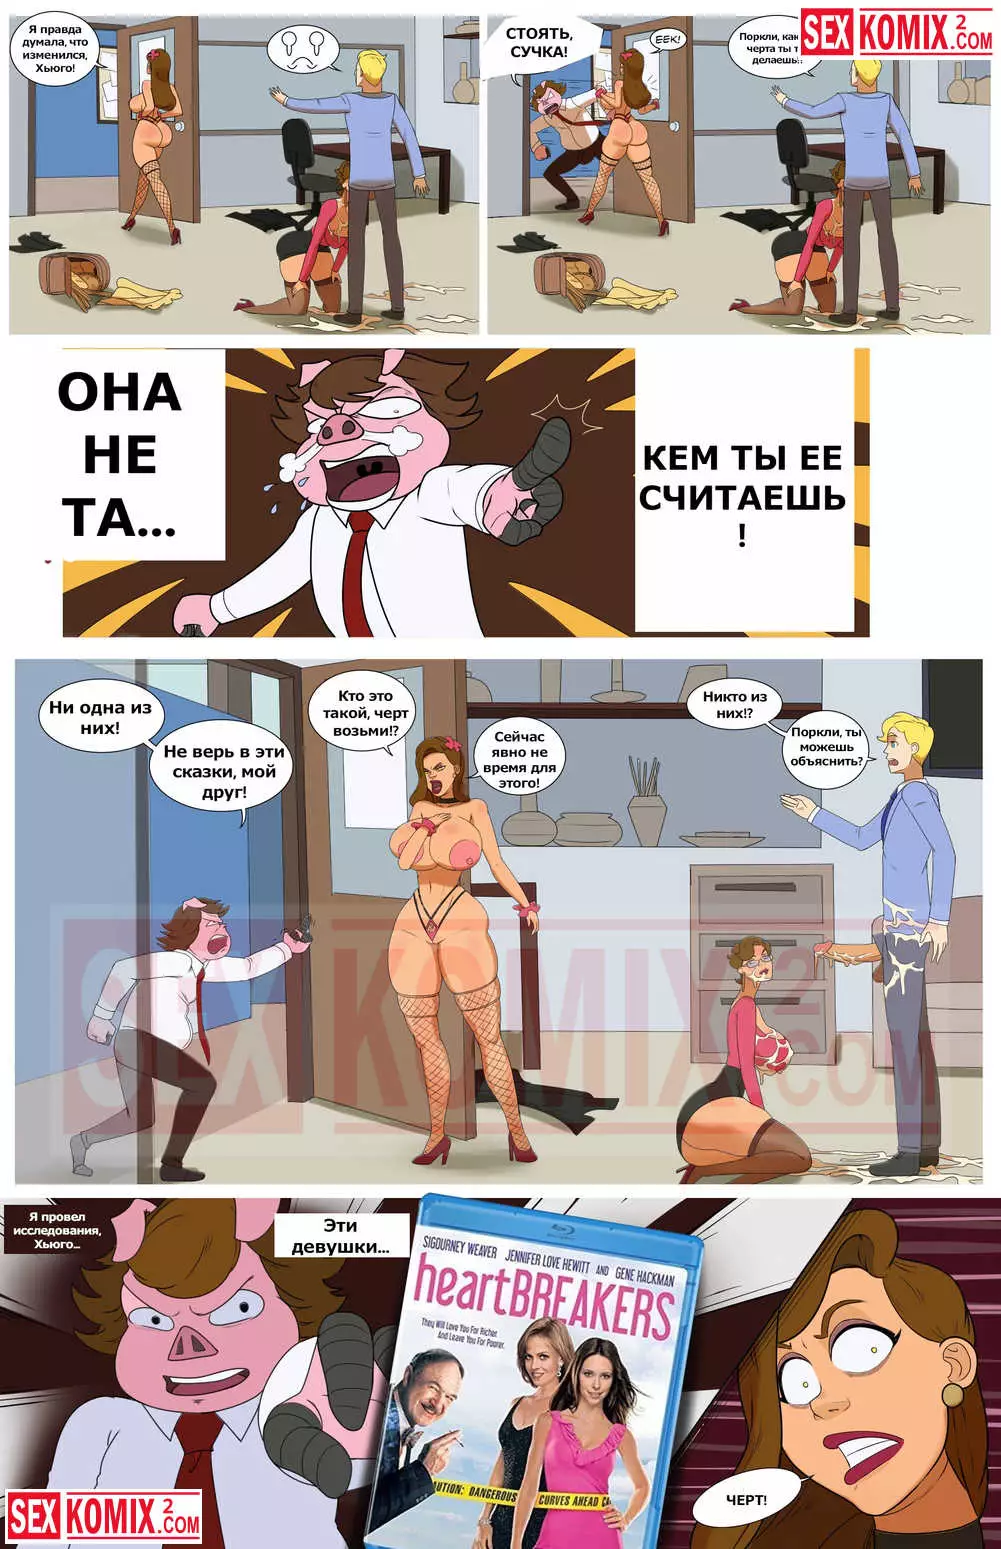 ✅️ Порно комикс Секретарь Джонс – секс комикс Secretary Jones | Порно  комиксы на русском языке только для взрослых | sexkomix2.com